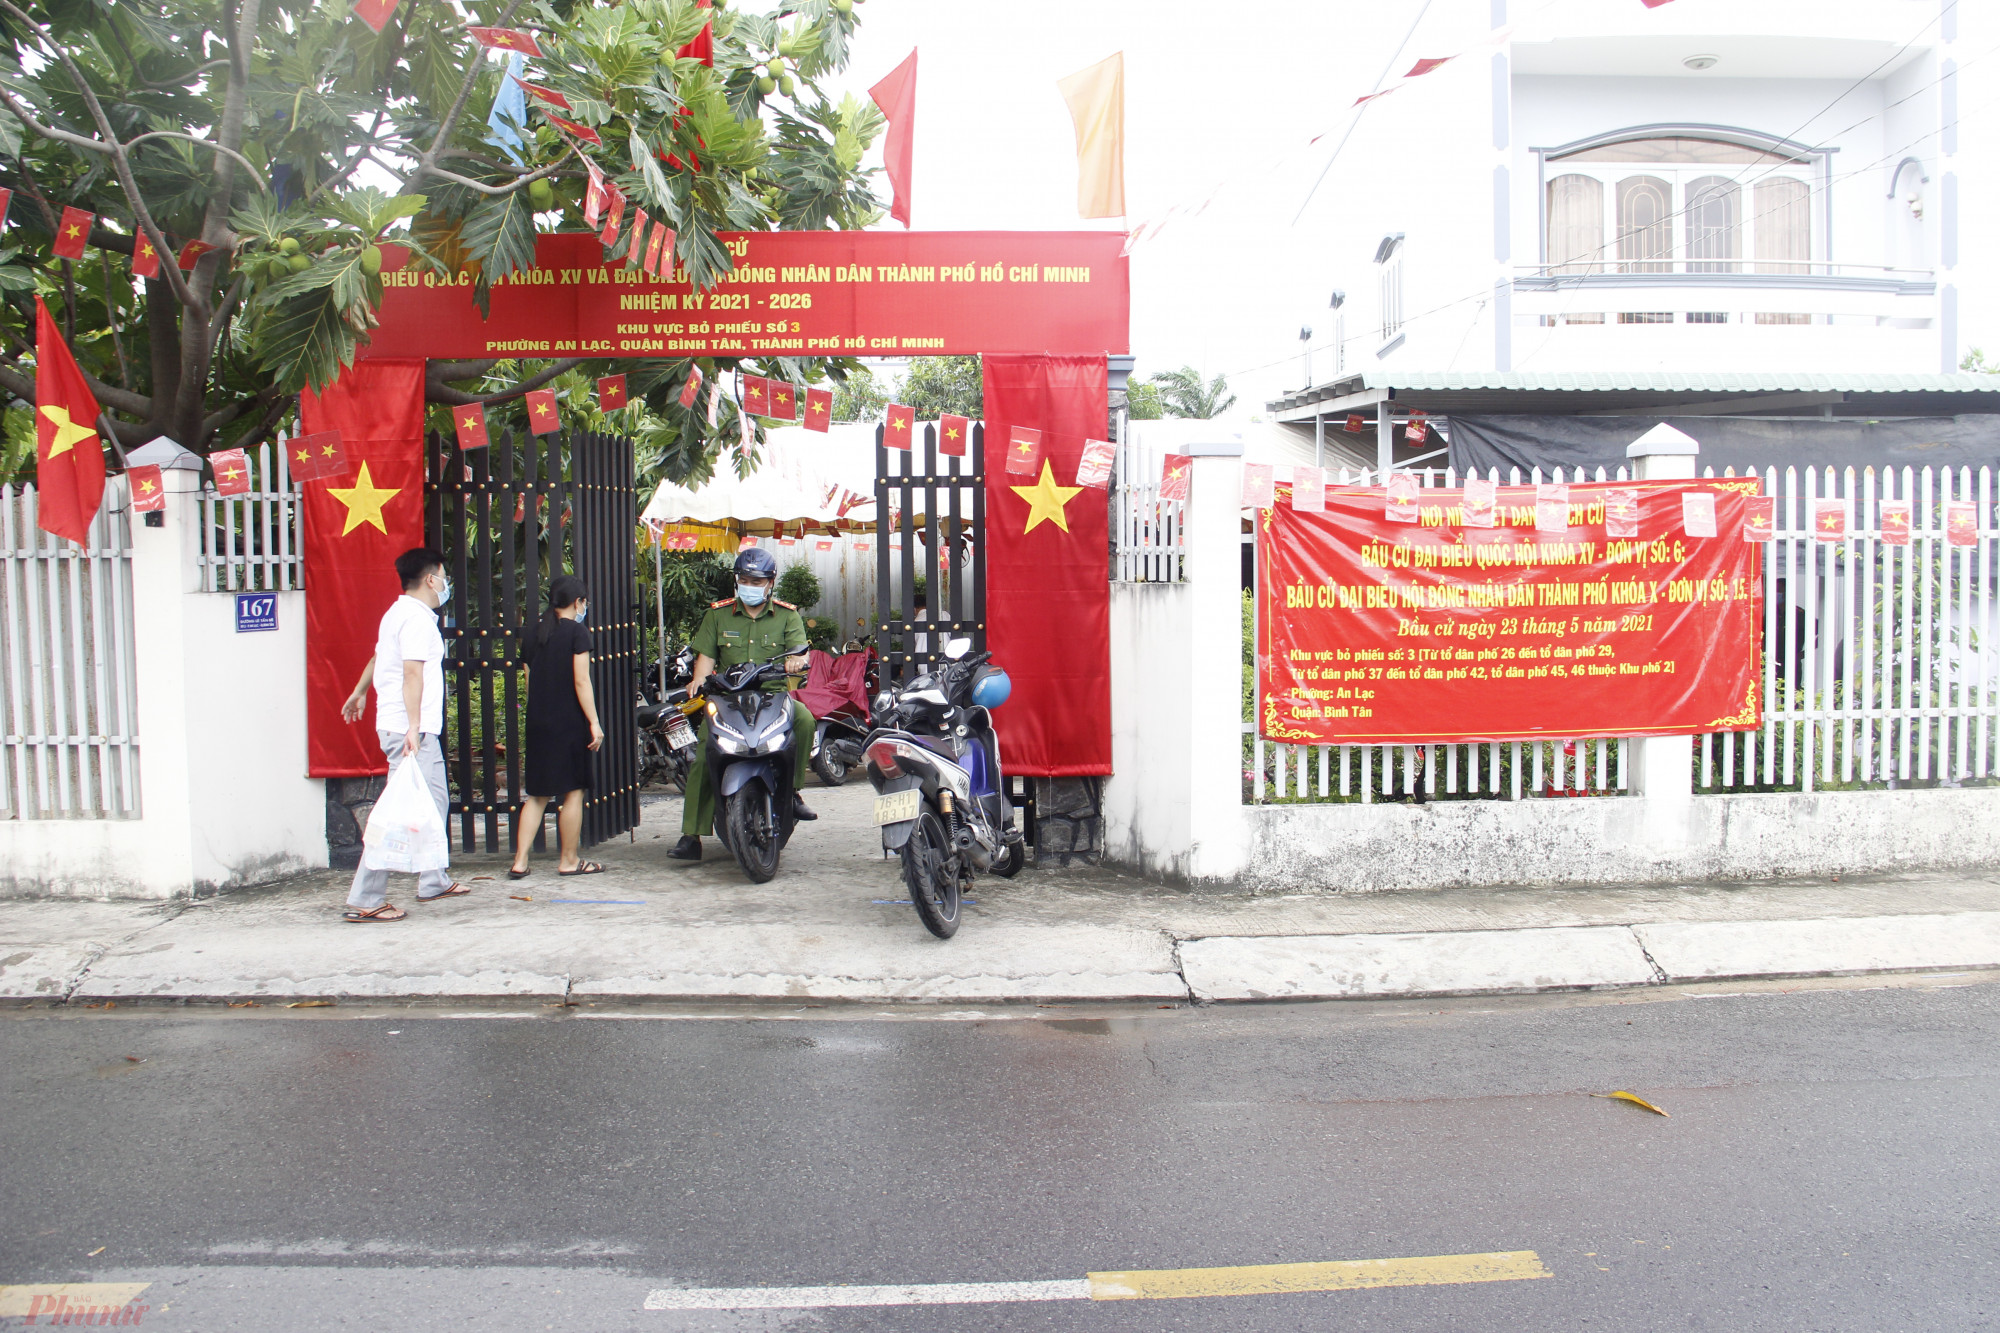 Ngày 23/5, nhà ông Kiều Văn Sen (quận Bình Tân) sẽ được sử dụng để làm điểm bỏ phiếu thuộc Tổ bầu cử số 3. Nhiều ngày liền, gia đình ông Sen cùng cán bộ địa phương đã chung tay làm công tác trang trí, chuẩn bị cho bầu cử.